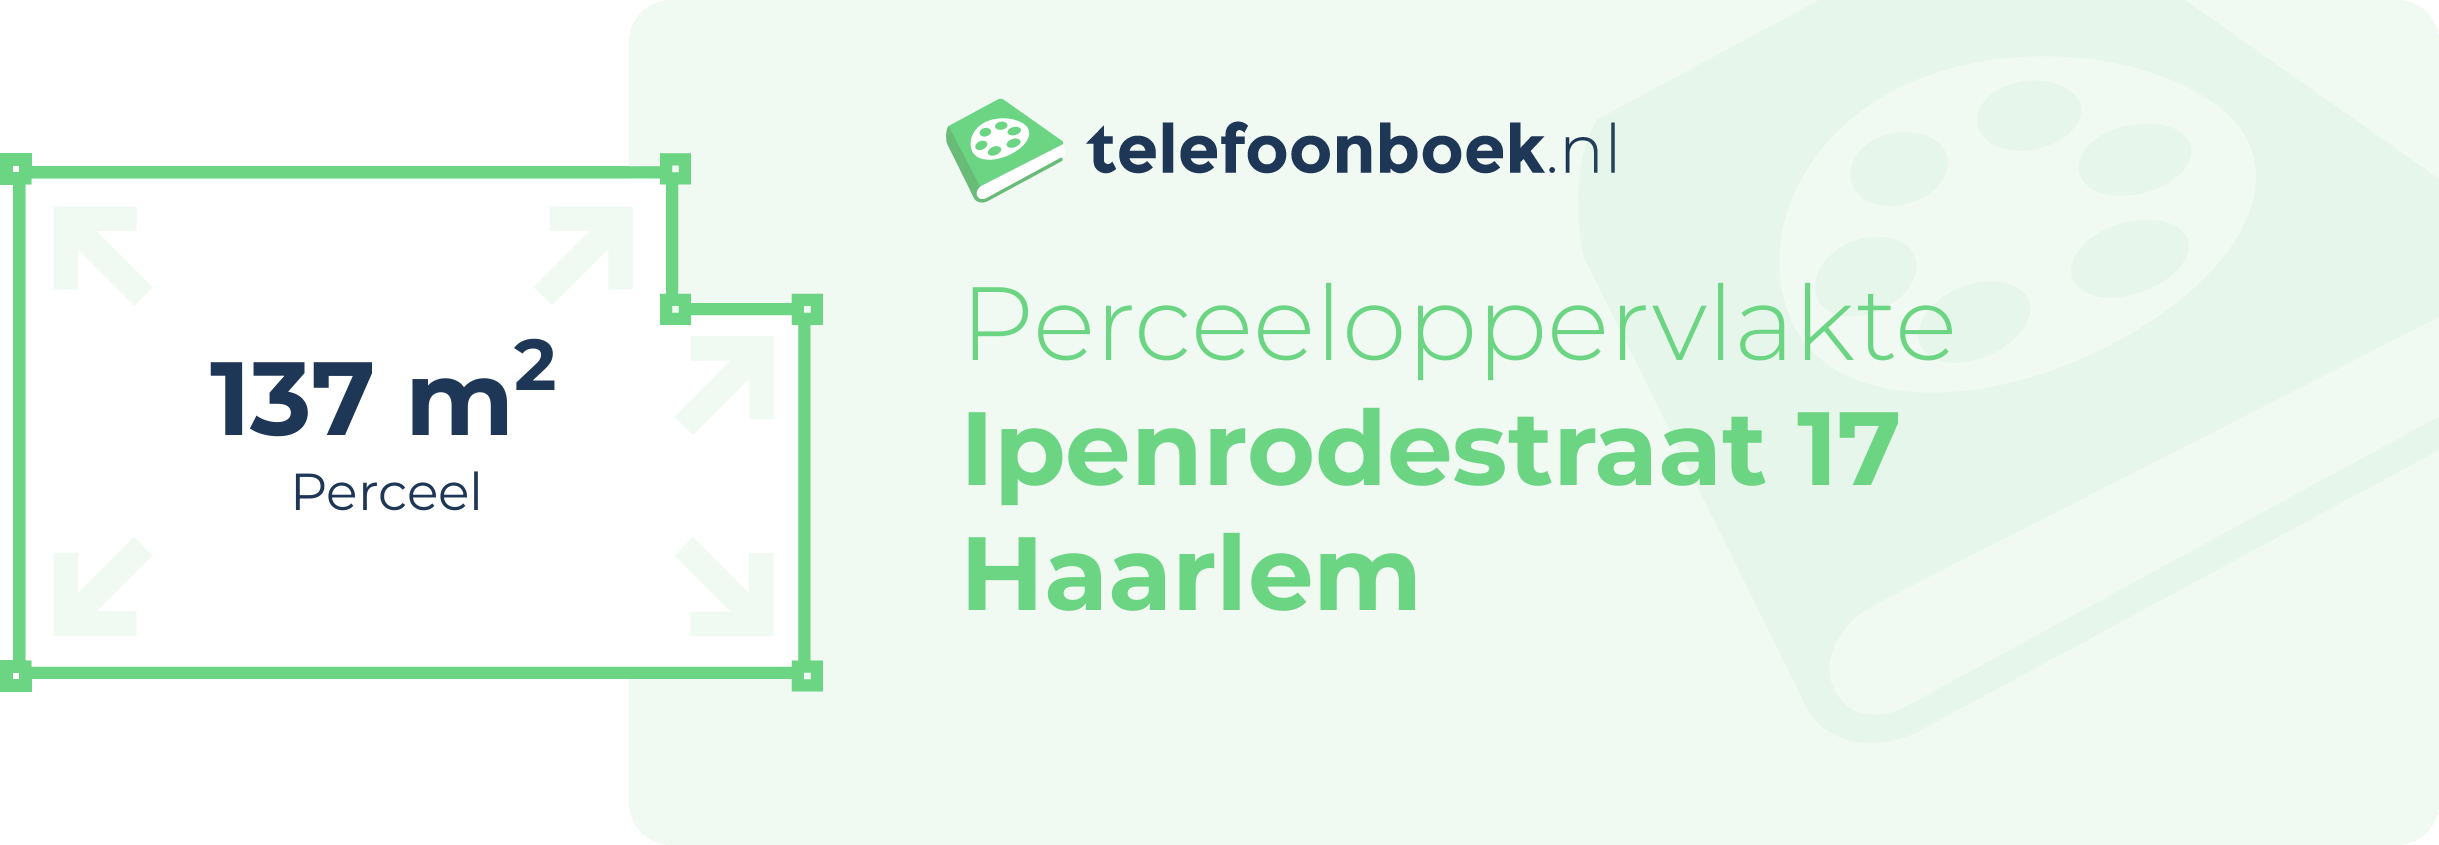 Perceeloppervlakte Ipenrodestraat 17 Haarlem